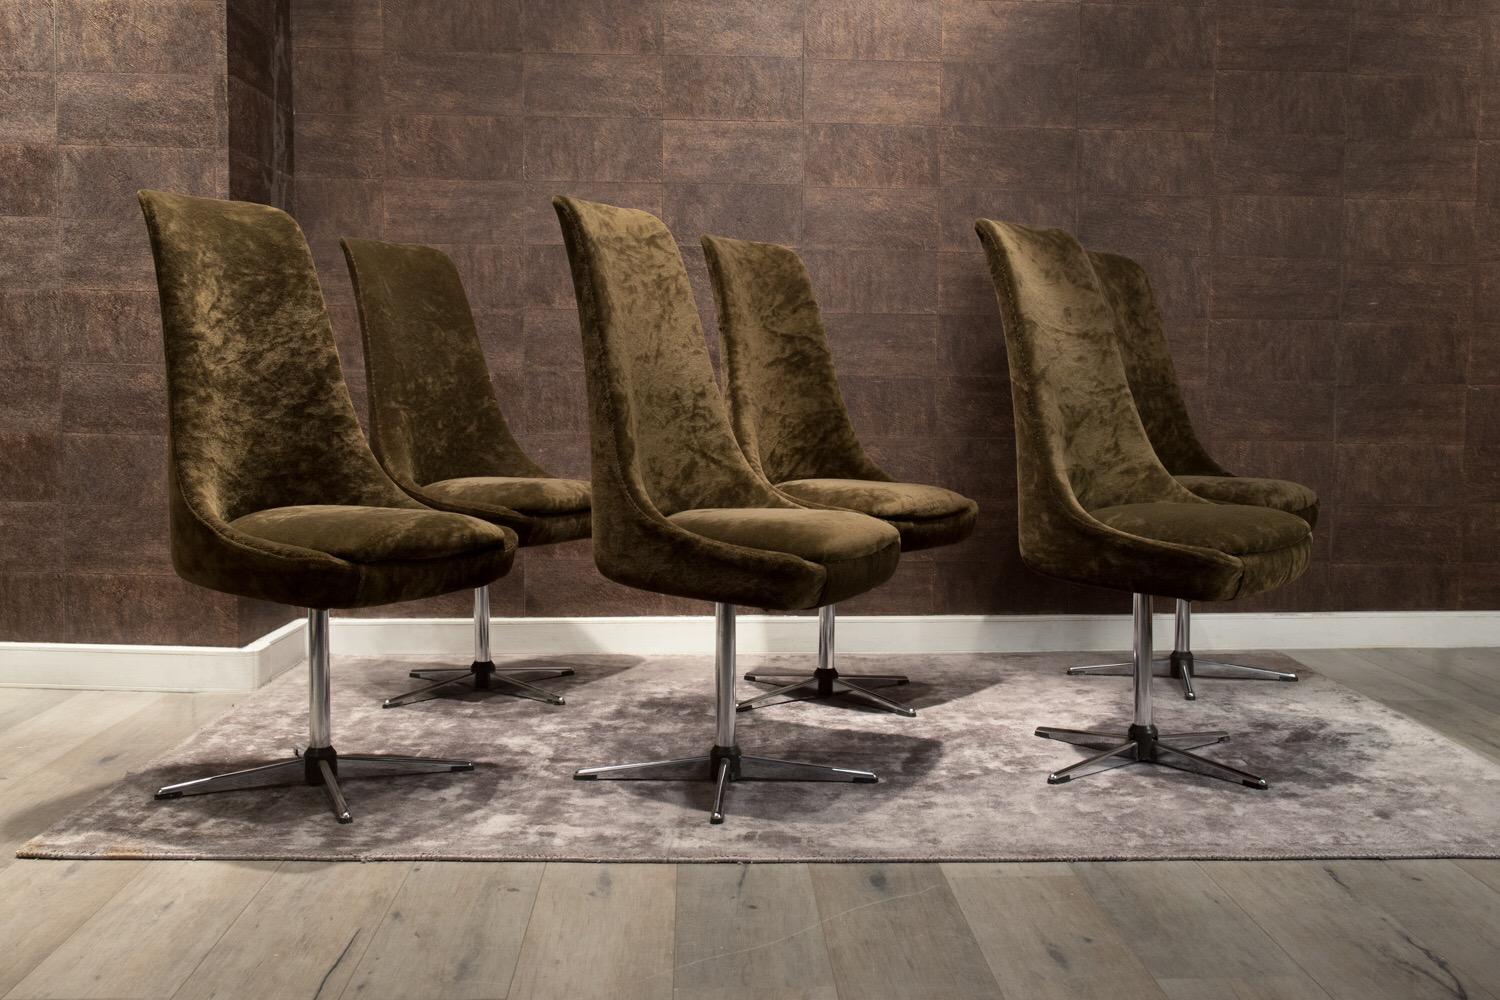 Ensemble de six chaises italiennes des années 1970, les sièges garnis d'un velours original sur un pivot ayant quatre pieds en acier inoxydable.
Cette série de chaises peut parfaitement servir de sièges pour une table de salle à manger circa